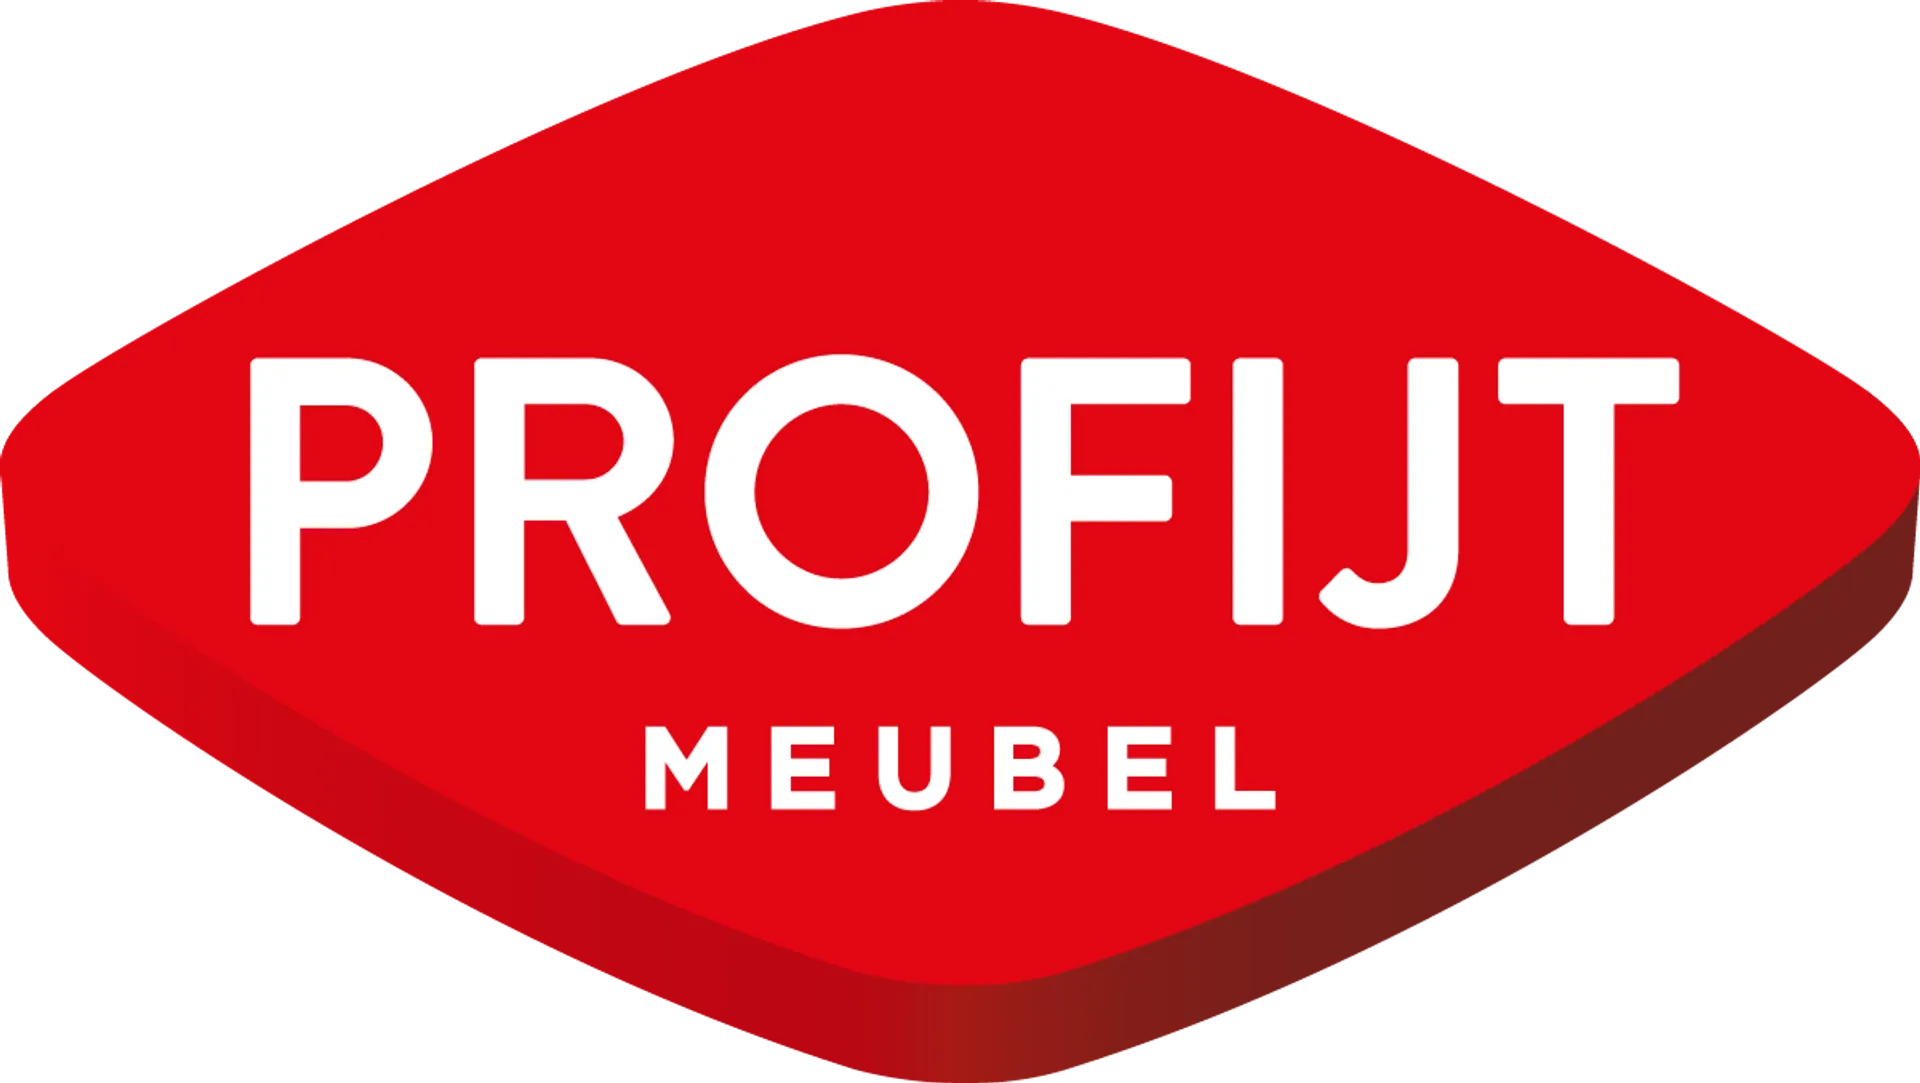 PROFIJT MEUBEL logo